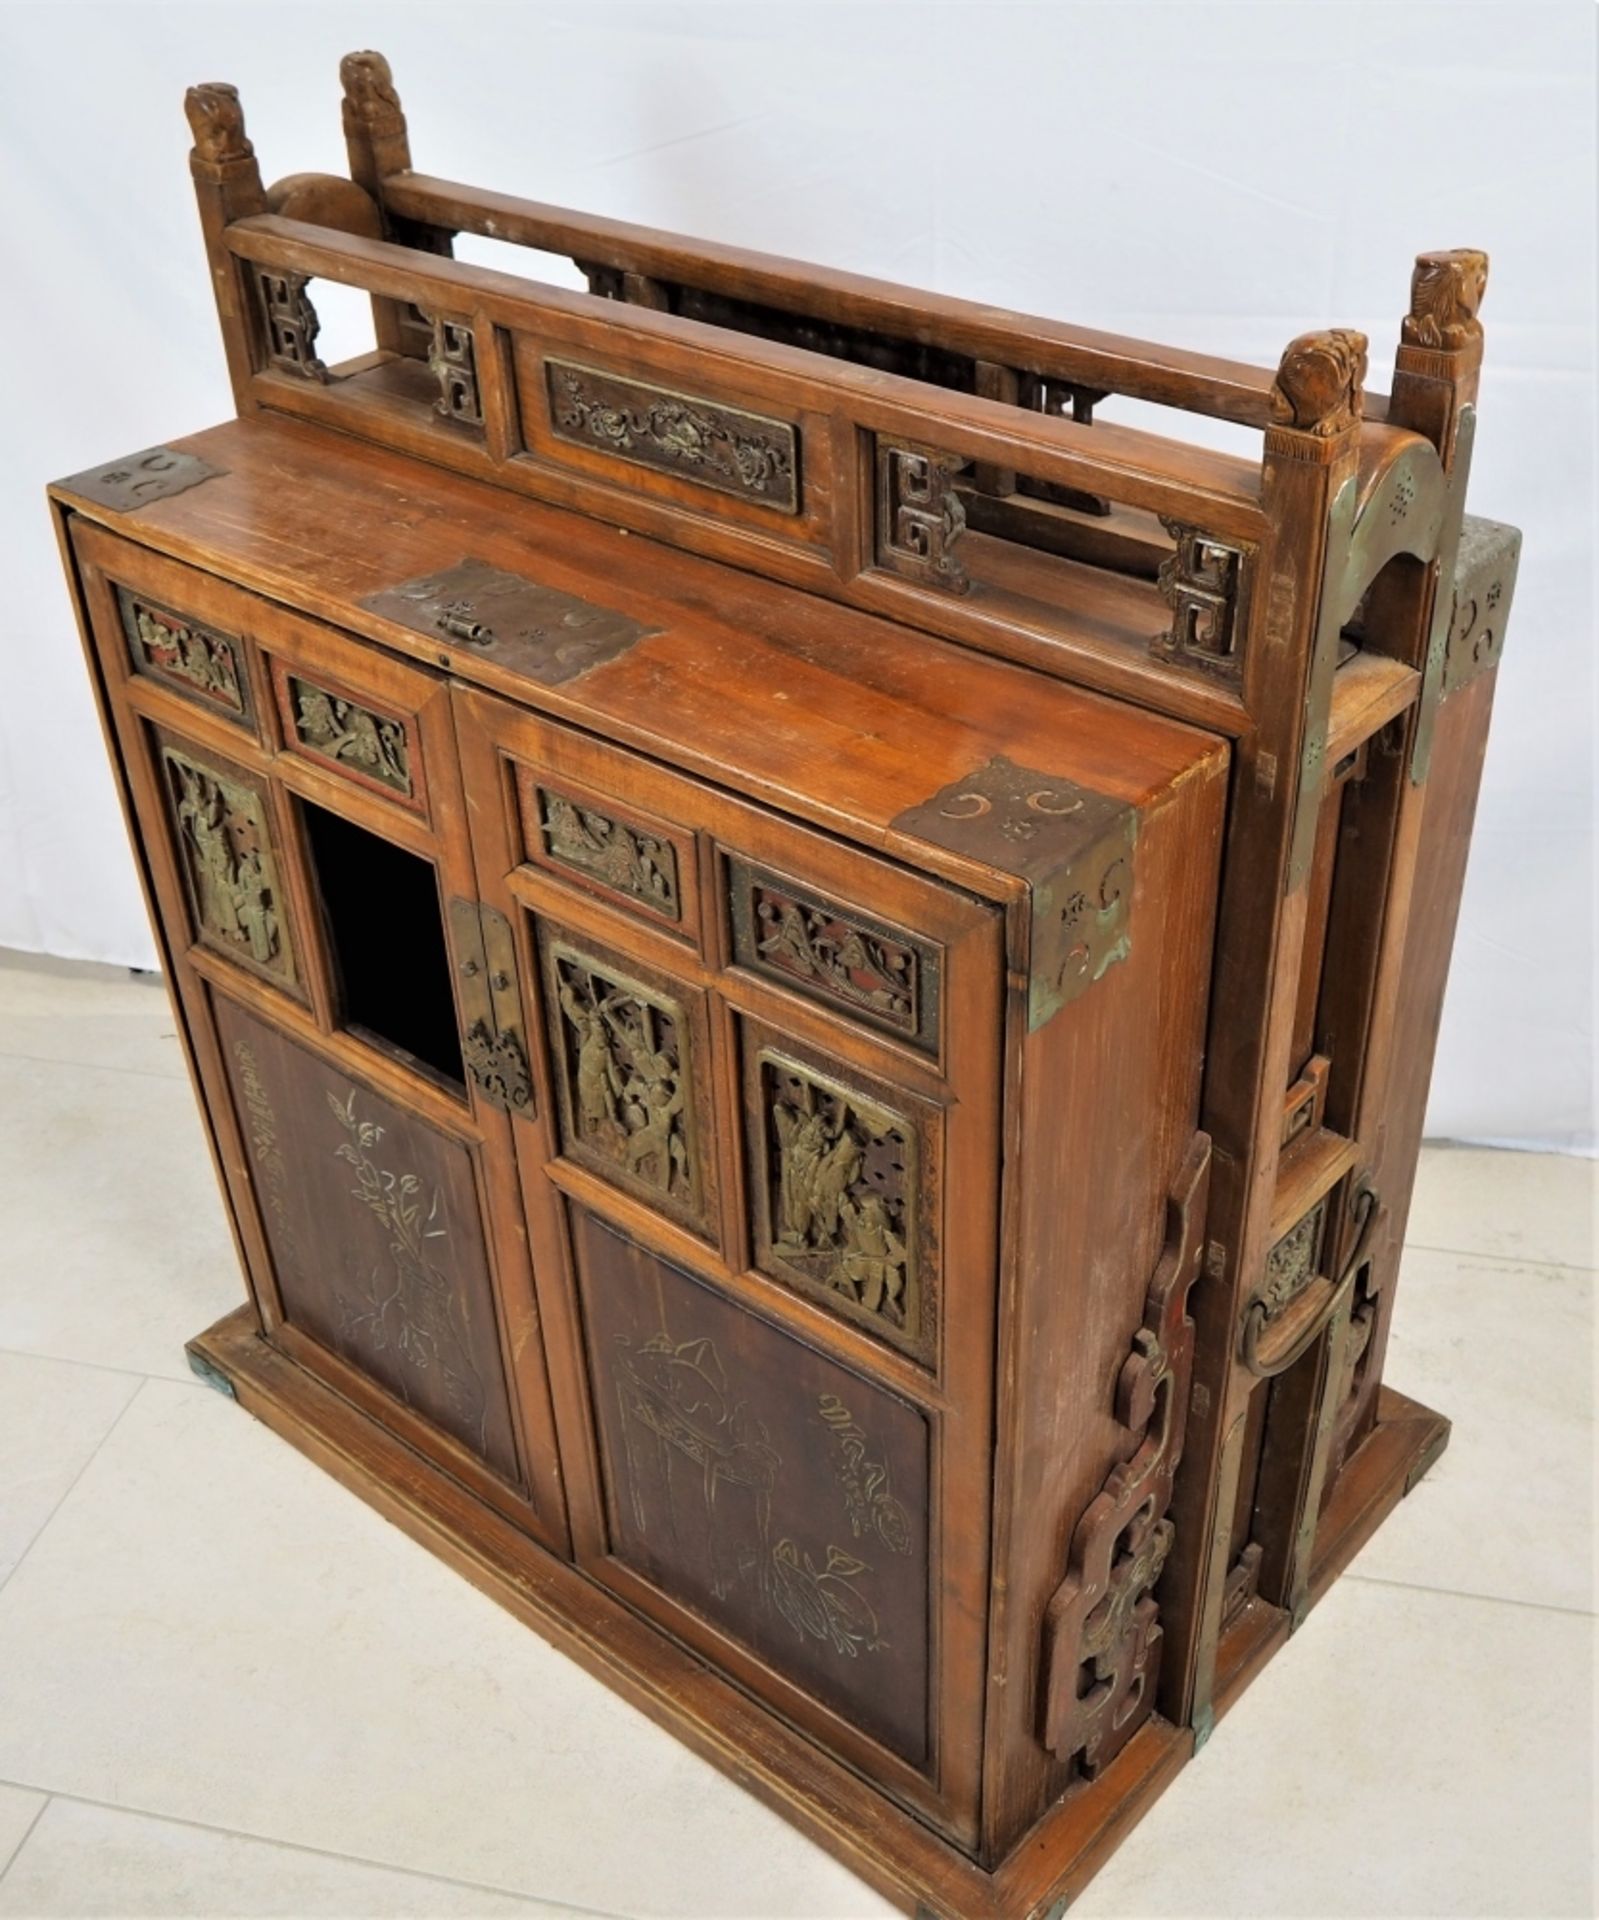 Beistellschrank, China um 1900Aus Holz gefertigt, mit aufwendigen Schnitzereien. Seitlic